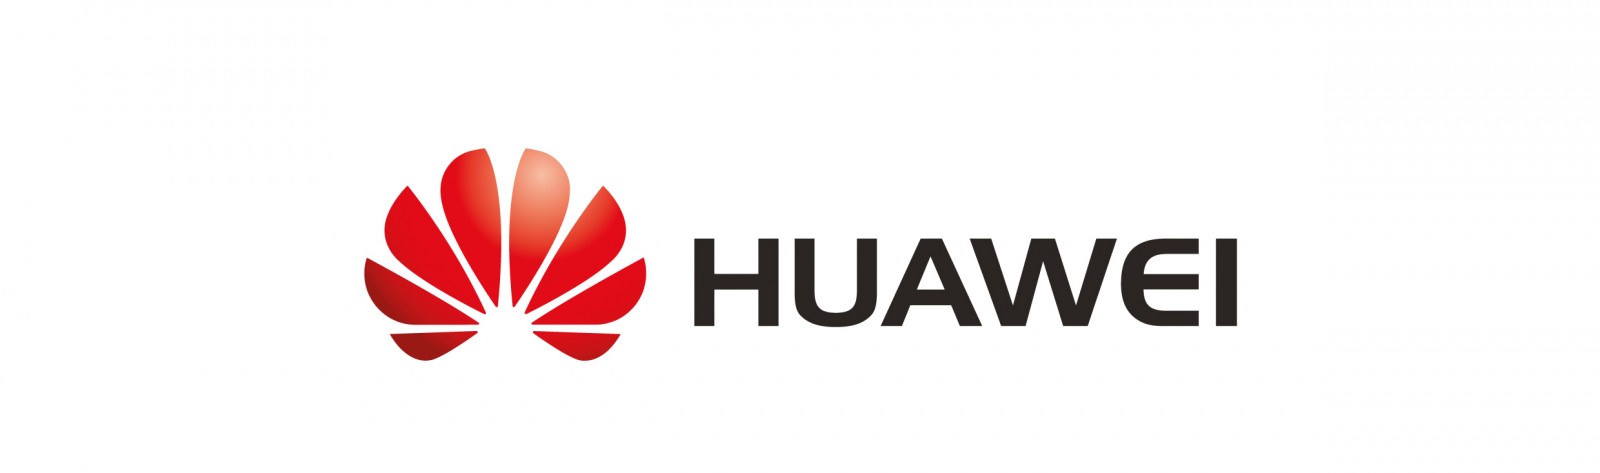 Η Huawei πρωταγωνιστεί στην ελληνική αγορά και υποστηρίζει την ανάπτυξη δικτύων νέας γενιάς